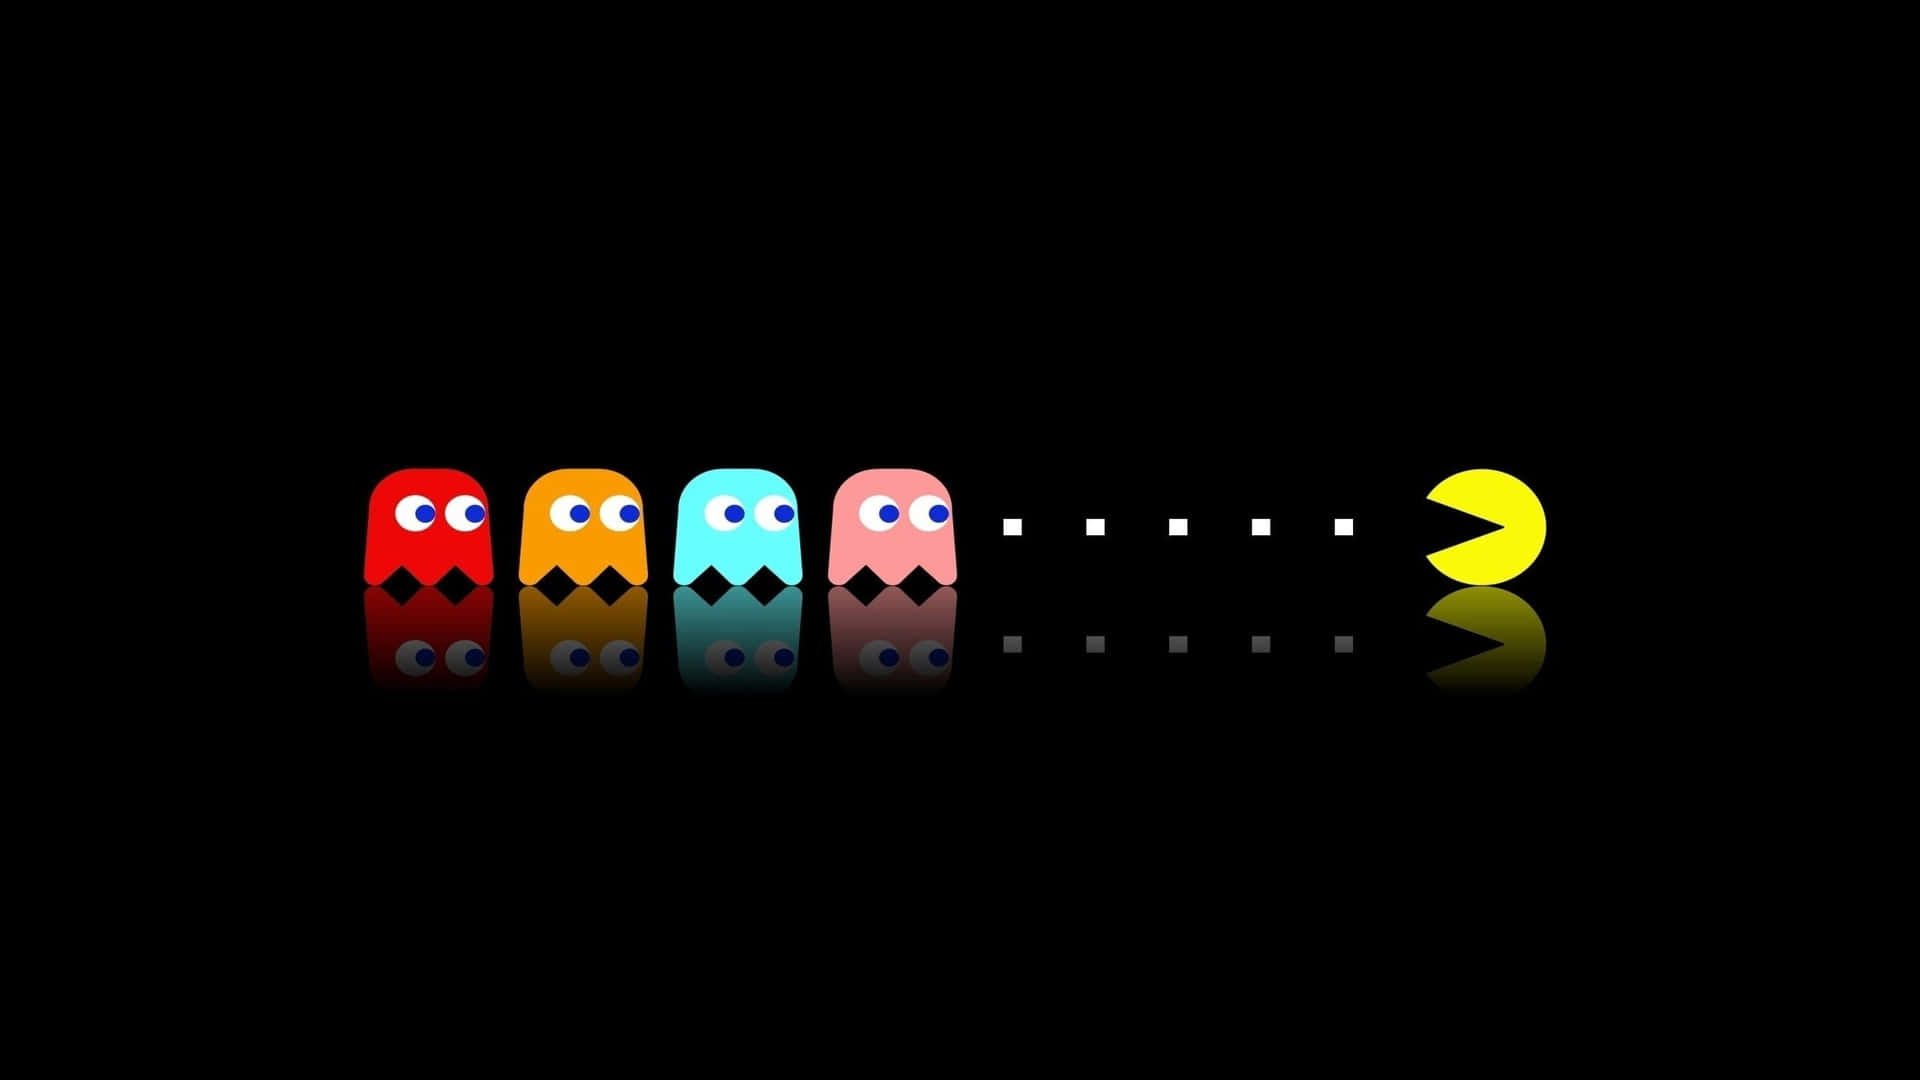 Bakgrundmed Gulliga Karaktärer Från Pac-man I Zoomad Videospelsstil.